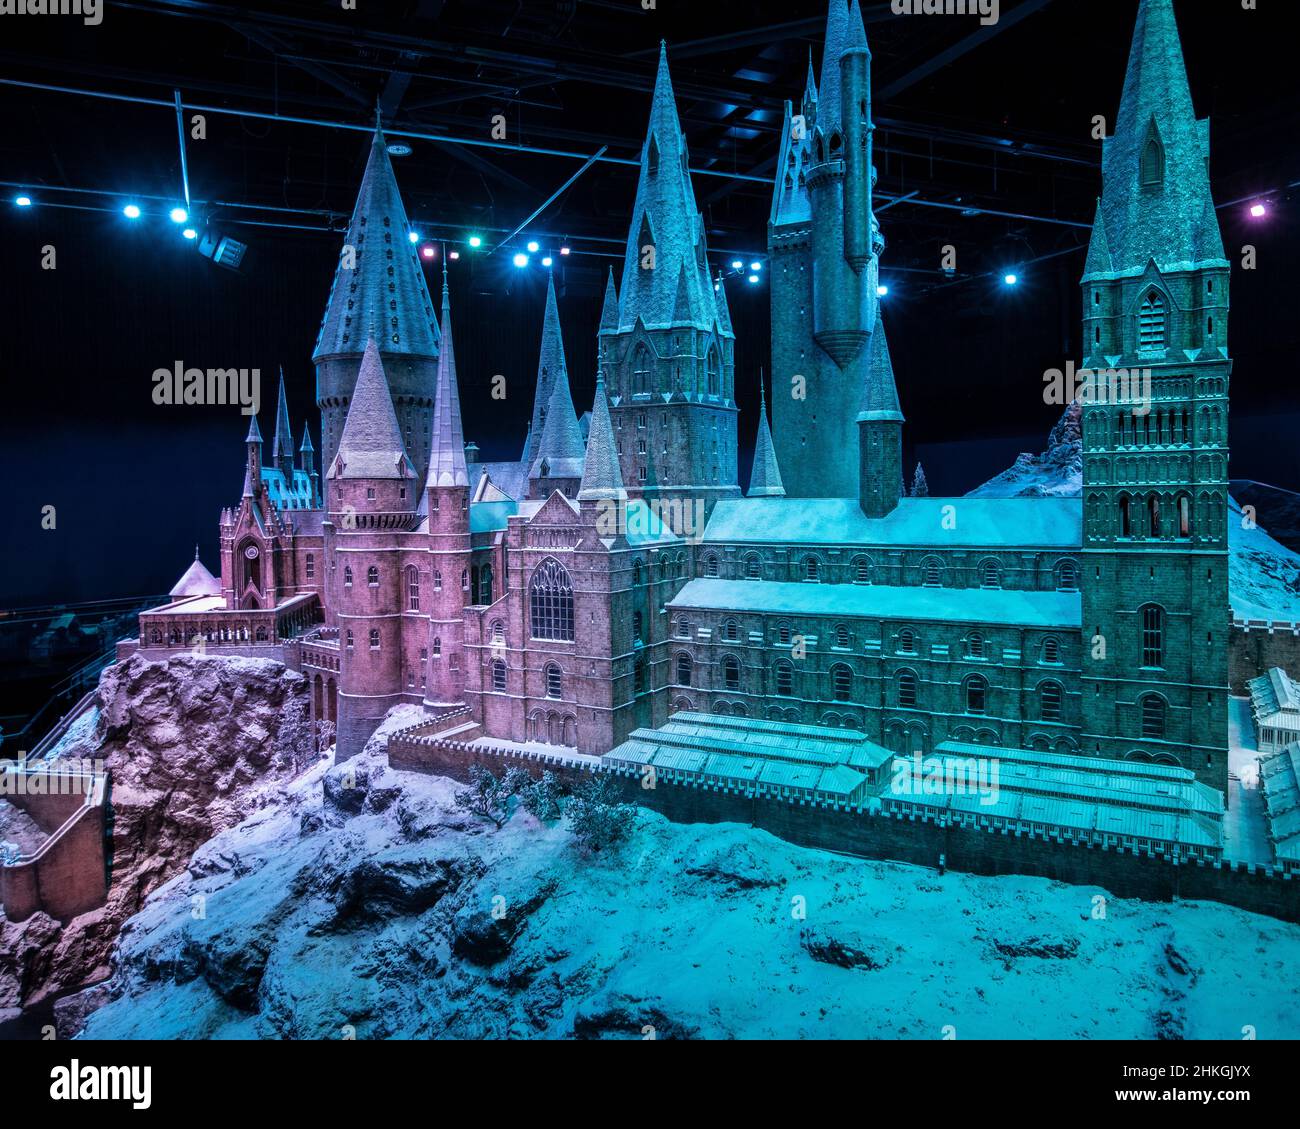 Leavesden, Regno Unito - Gennaio 9th 2022: Castello di Hogwarts nella neve in mostra al tour Making of Harry Potter presso i Warner Bros. Studios di Leavesden, Foto Stock